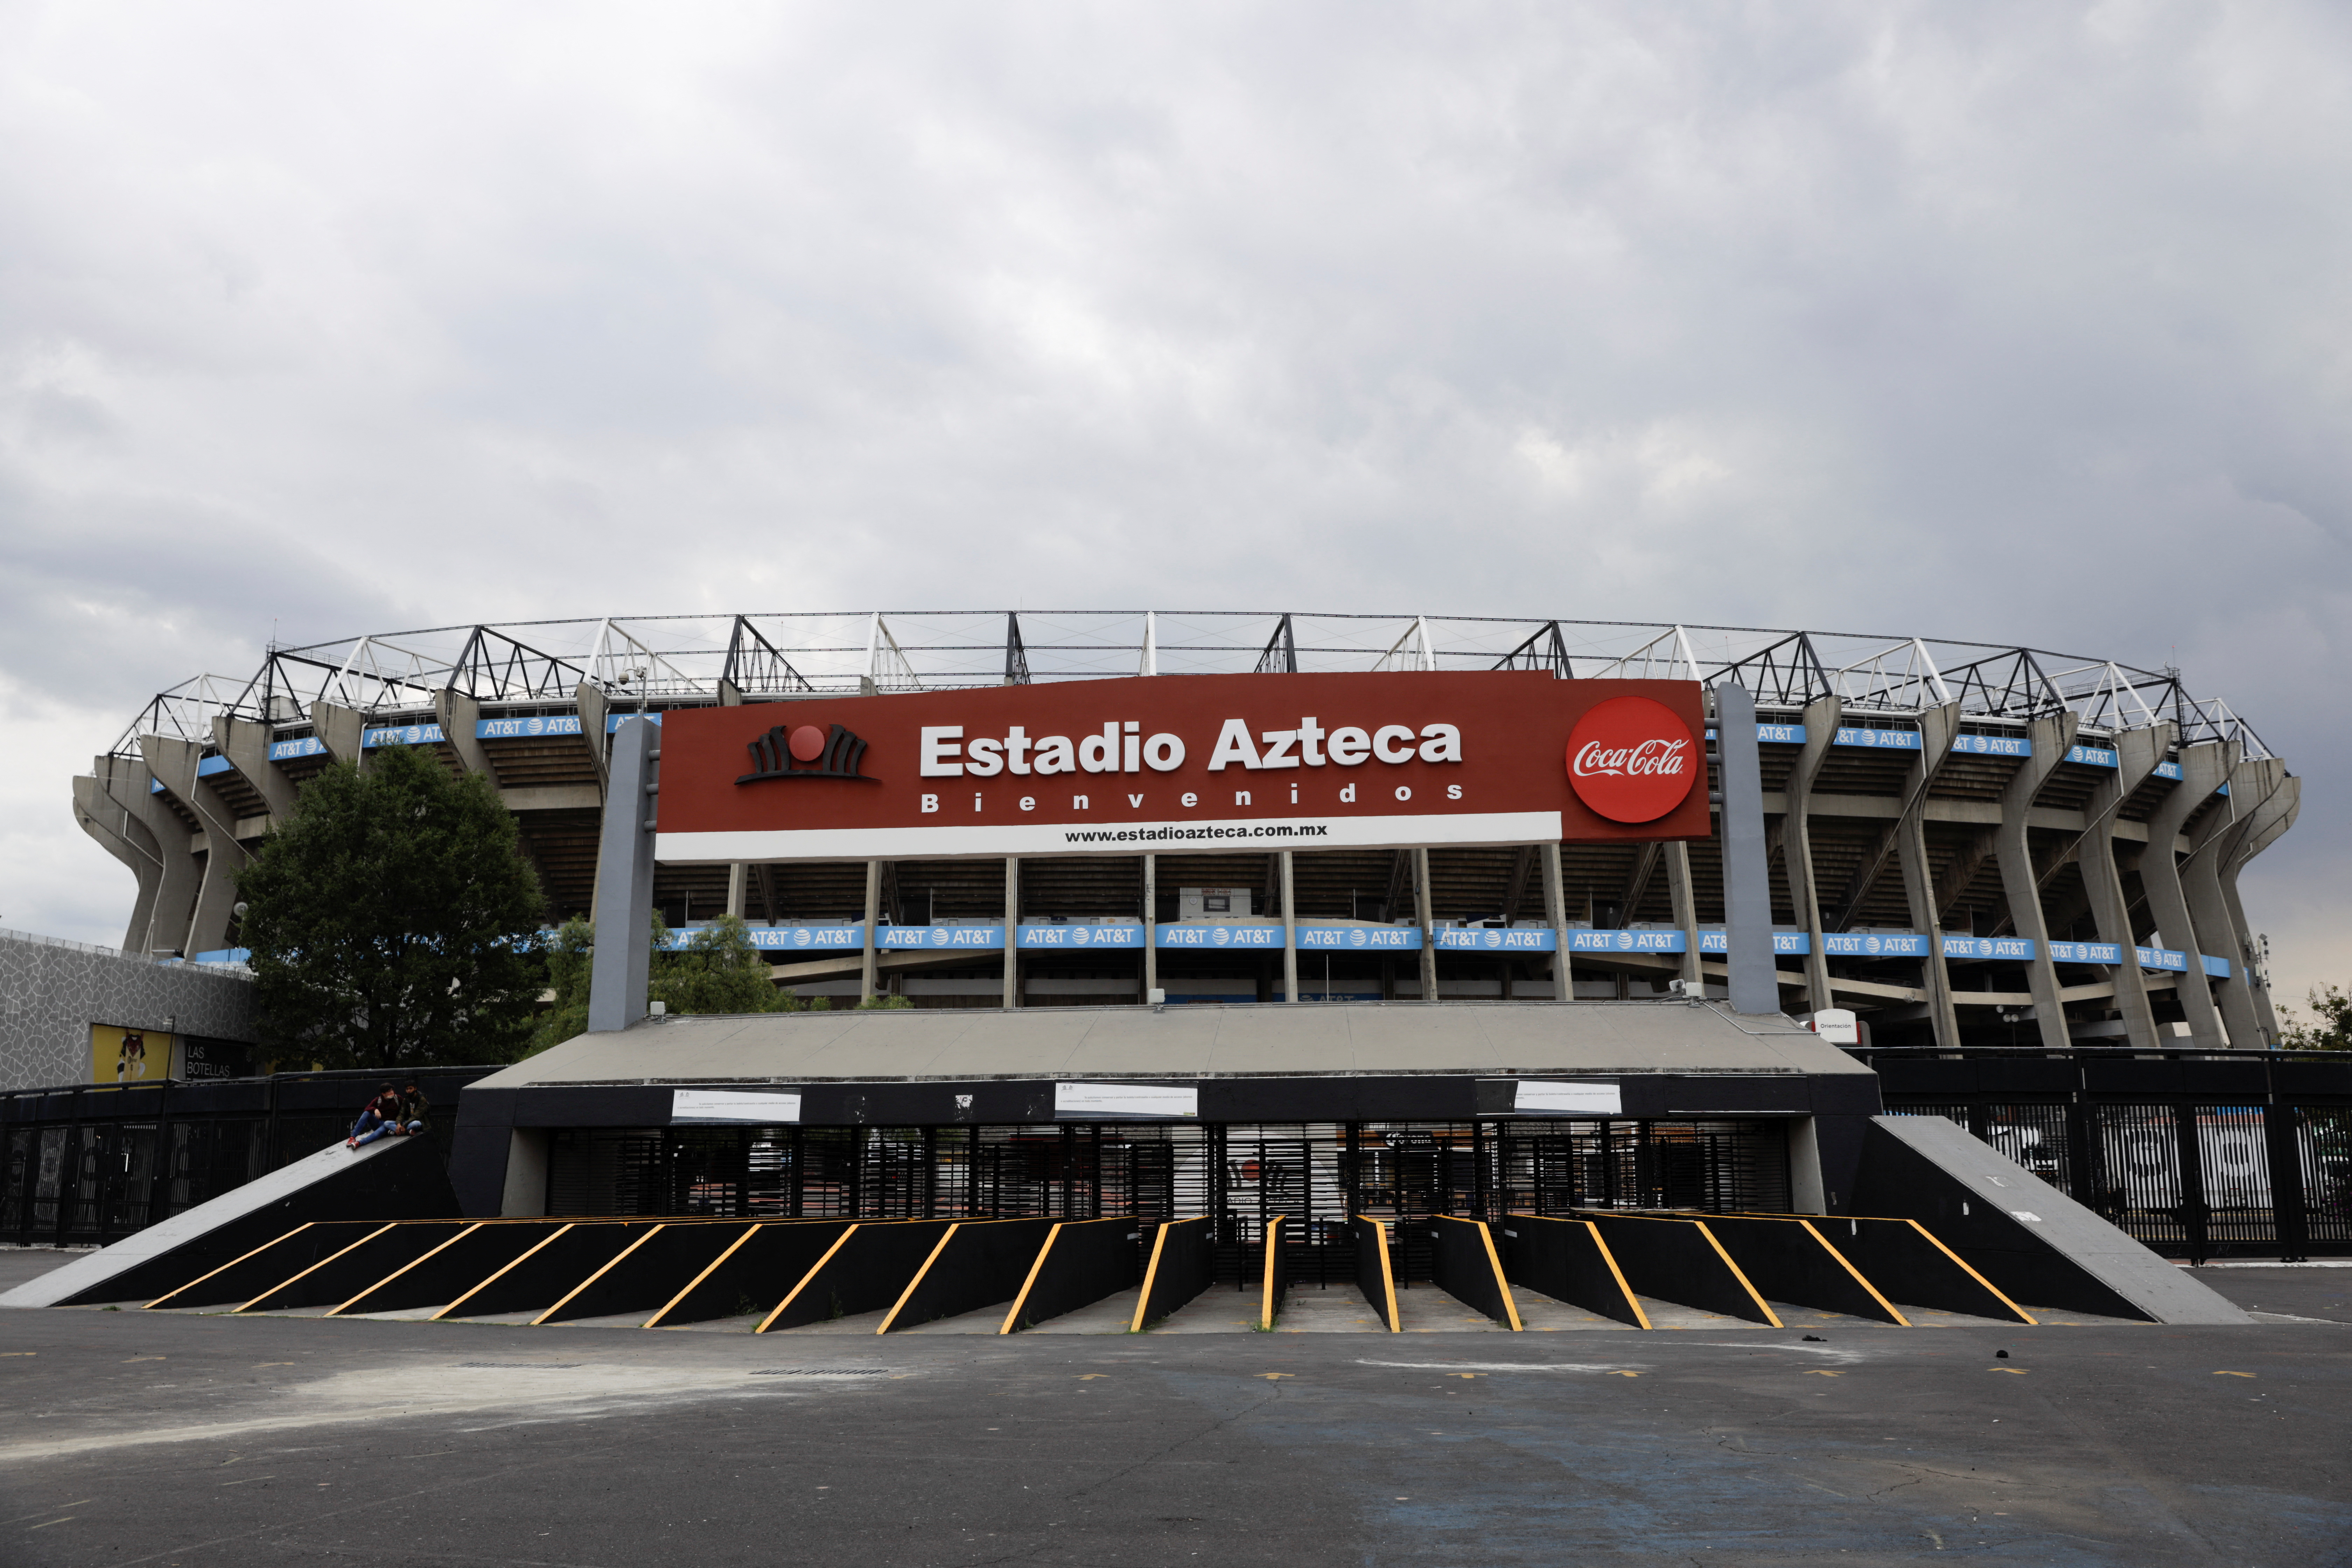 Vista general del estadio Azteca luego de que la FIFA anunciara a la Ciudad de México como una de las sedes de la Copa del Mundo 2026 que se llevará a cabo en los Estados Unidos, México y Canadá, en la Ciudad de México, México, el 16 de junio de 2022. REUTERS/Luis Tagli